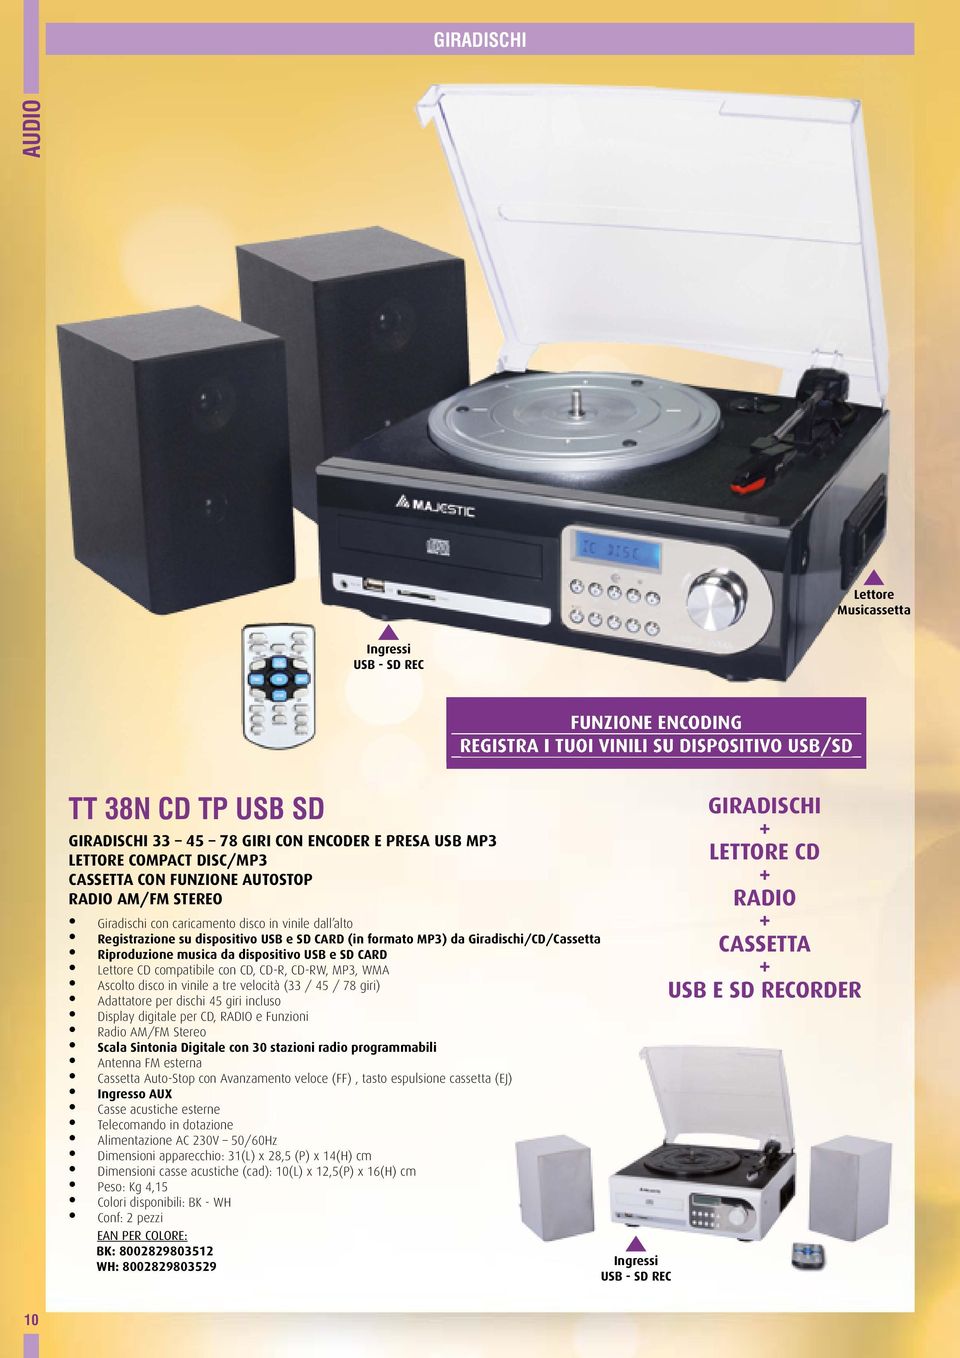 CARD Lettore CD compatibile con CD, CD-R, CD-RW, MP3, WMA Ascolto disco in vinile a tre velocità (33 / 45 / 78 giri) Adattatore per dischi 45 giri incluso Display digitale per CD, RADIO e Funzioni